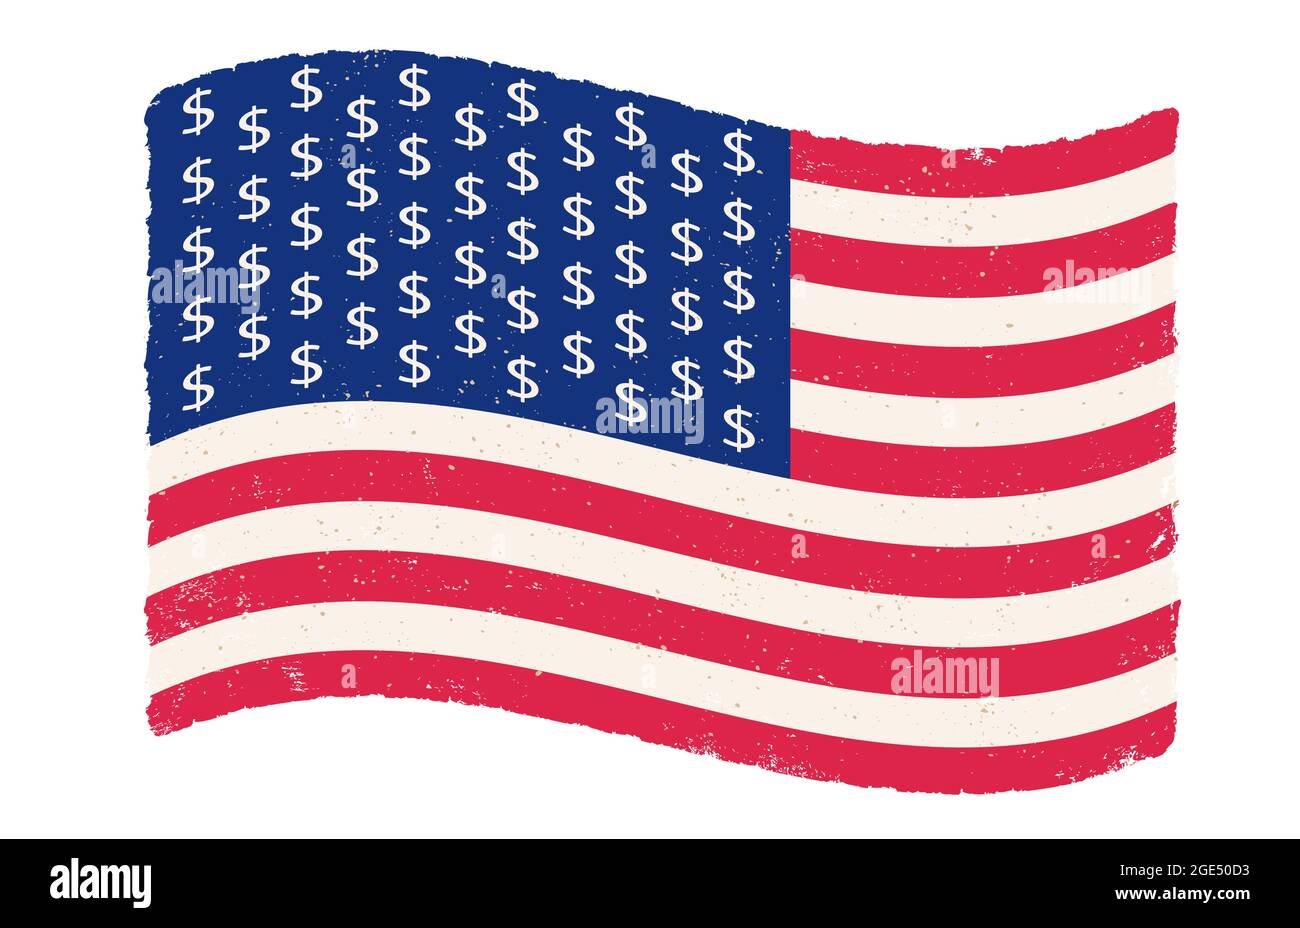 Vector Vintage amerikanische Flagge mit Dollar-Zeichen statt Sterne. US-Flagge auf isoliertem Hintergrund mit Dollarzeichen. Flagge der USA im Retro-Stil. Stock Vektor